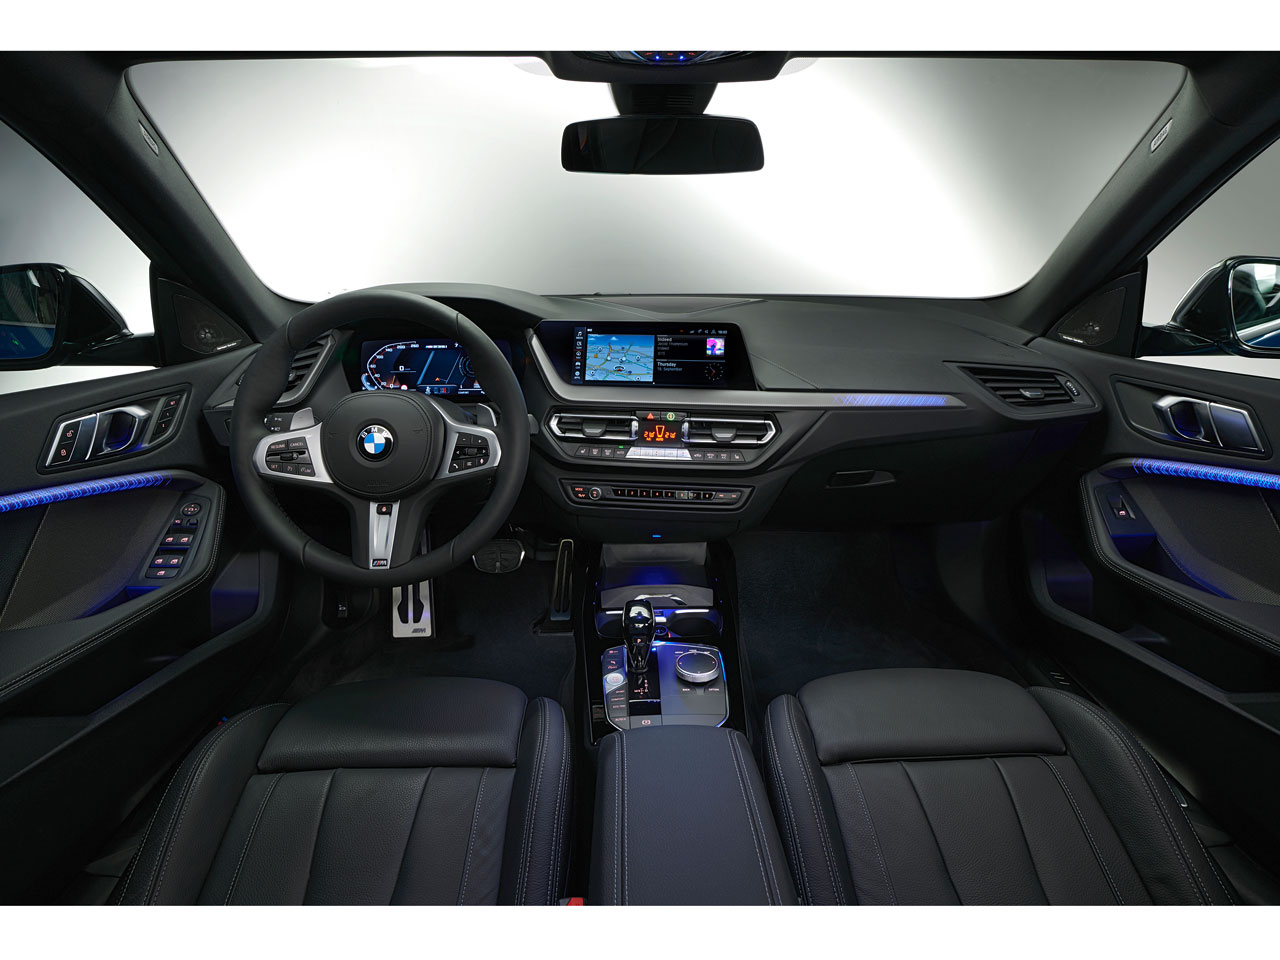 BMW純正 2シリーズクーペMスポハイグロスブラック内装インパネセット